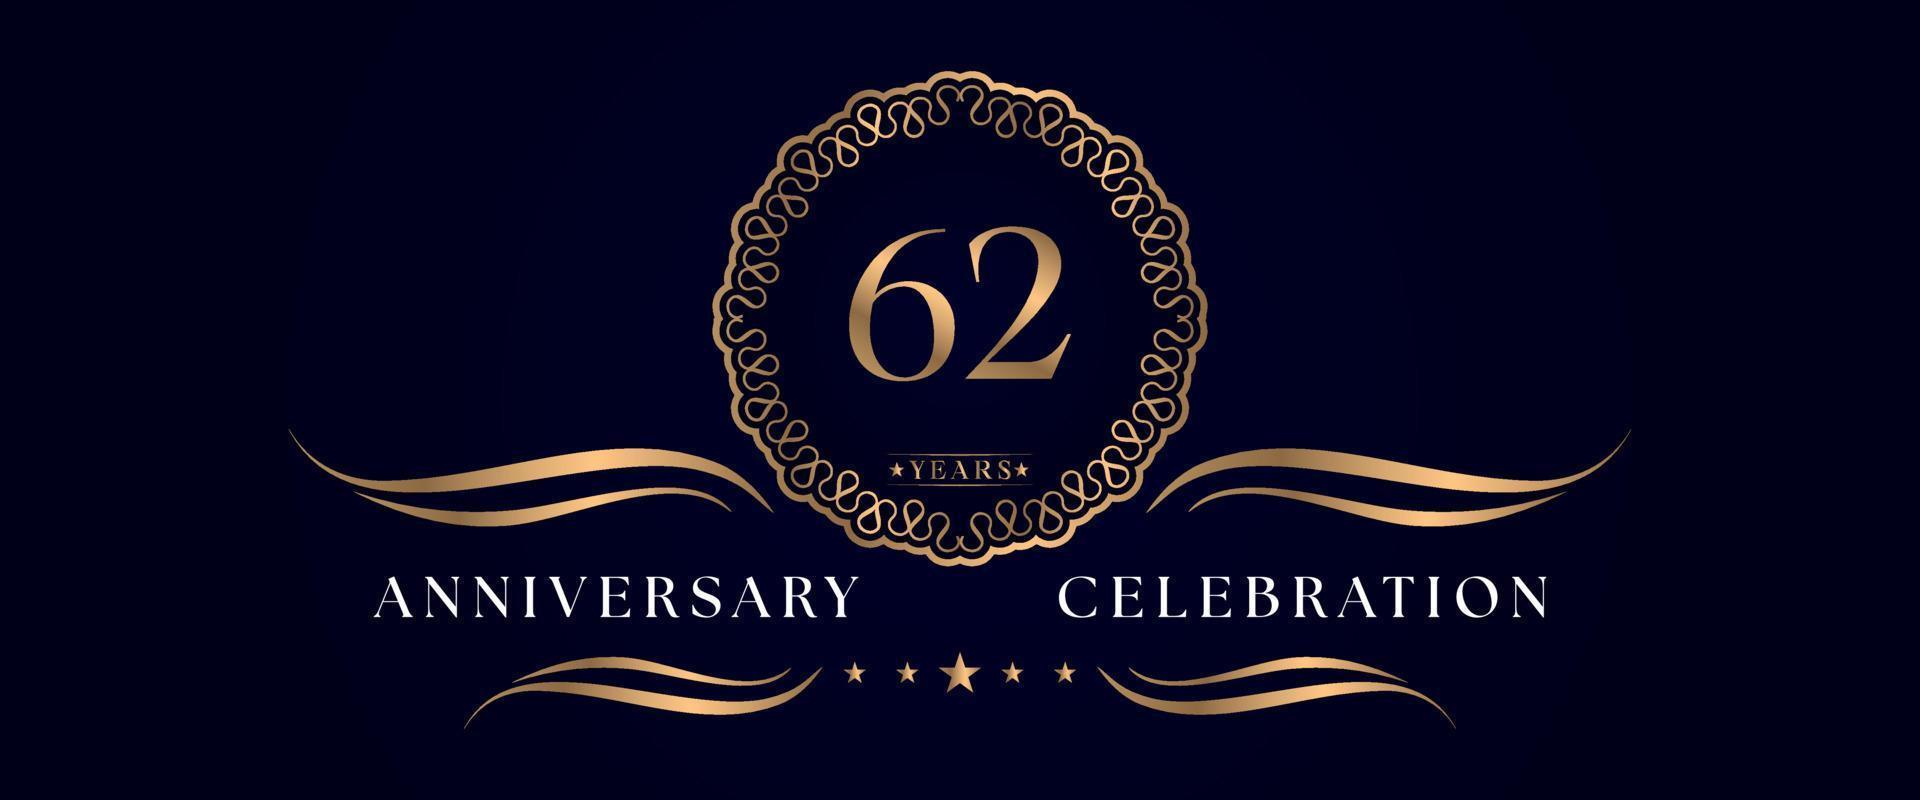 Celebrazione dell'anniversario di 62 anni con elegante cornice circolare isolata su sfondo blu scuro. disegno vettoriale per biglietto di auguri, festa di compleanno, matrimonio, festa evento, cerimonia. Logo dell'anniversario di 62 anni.